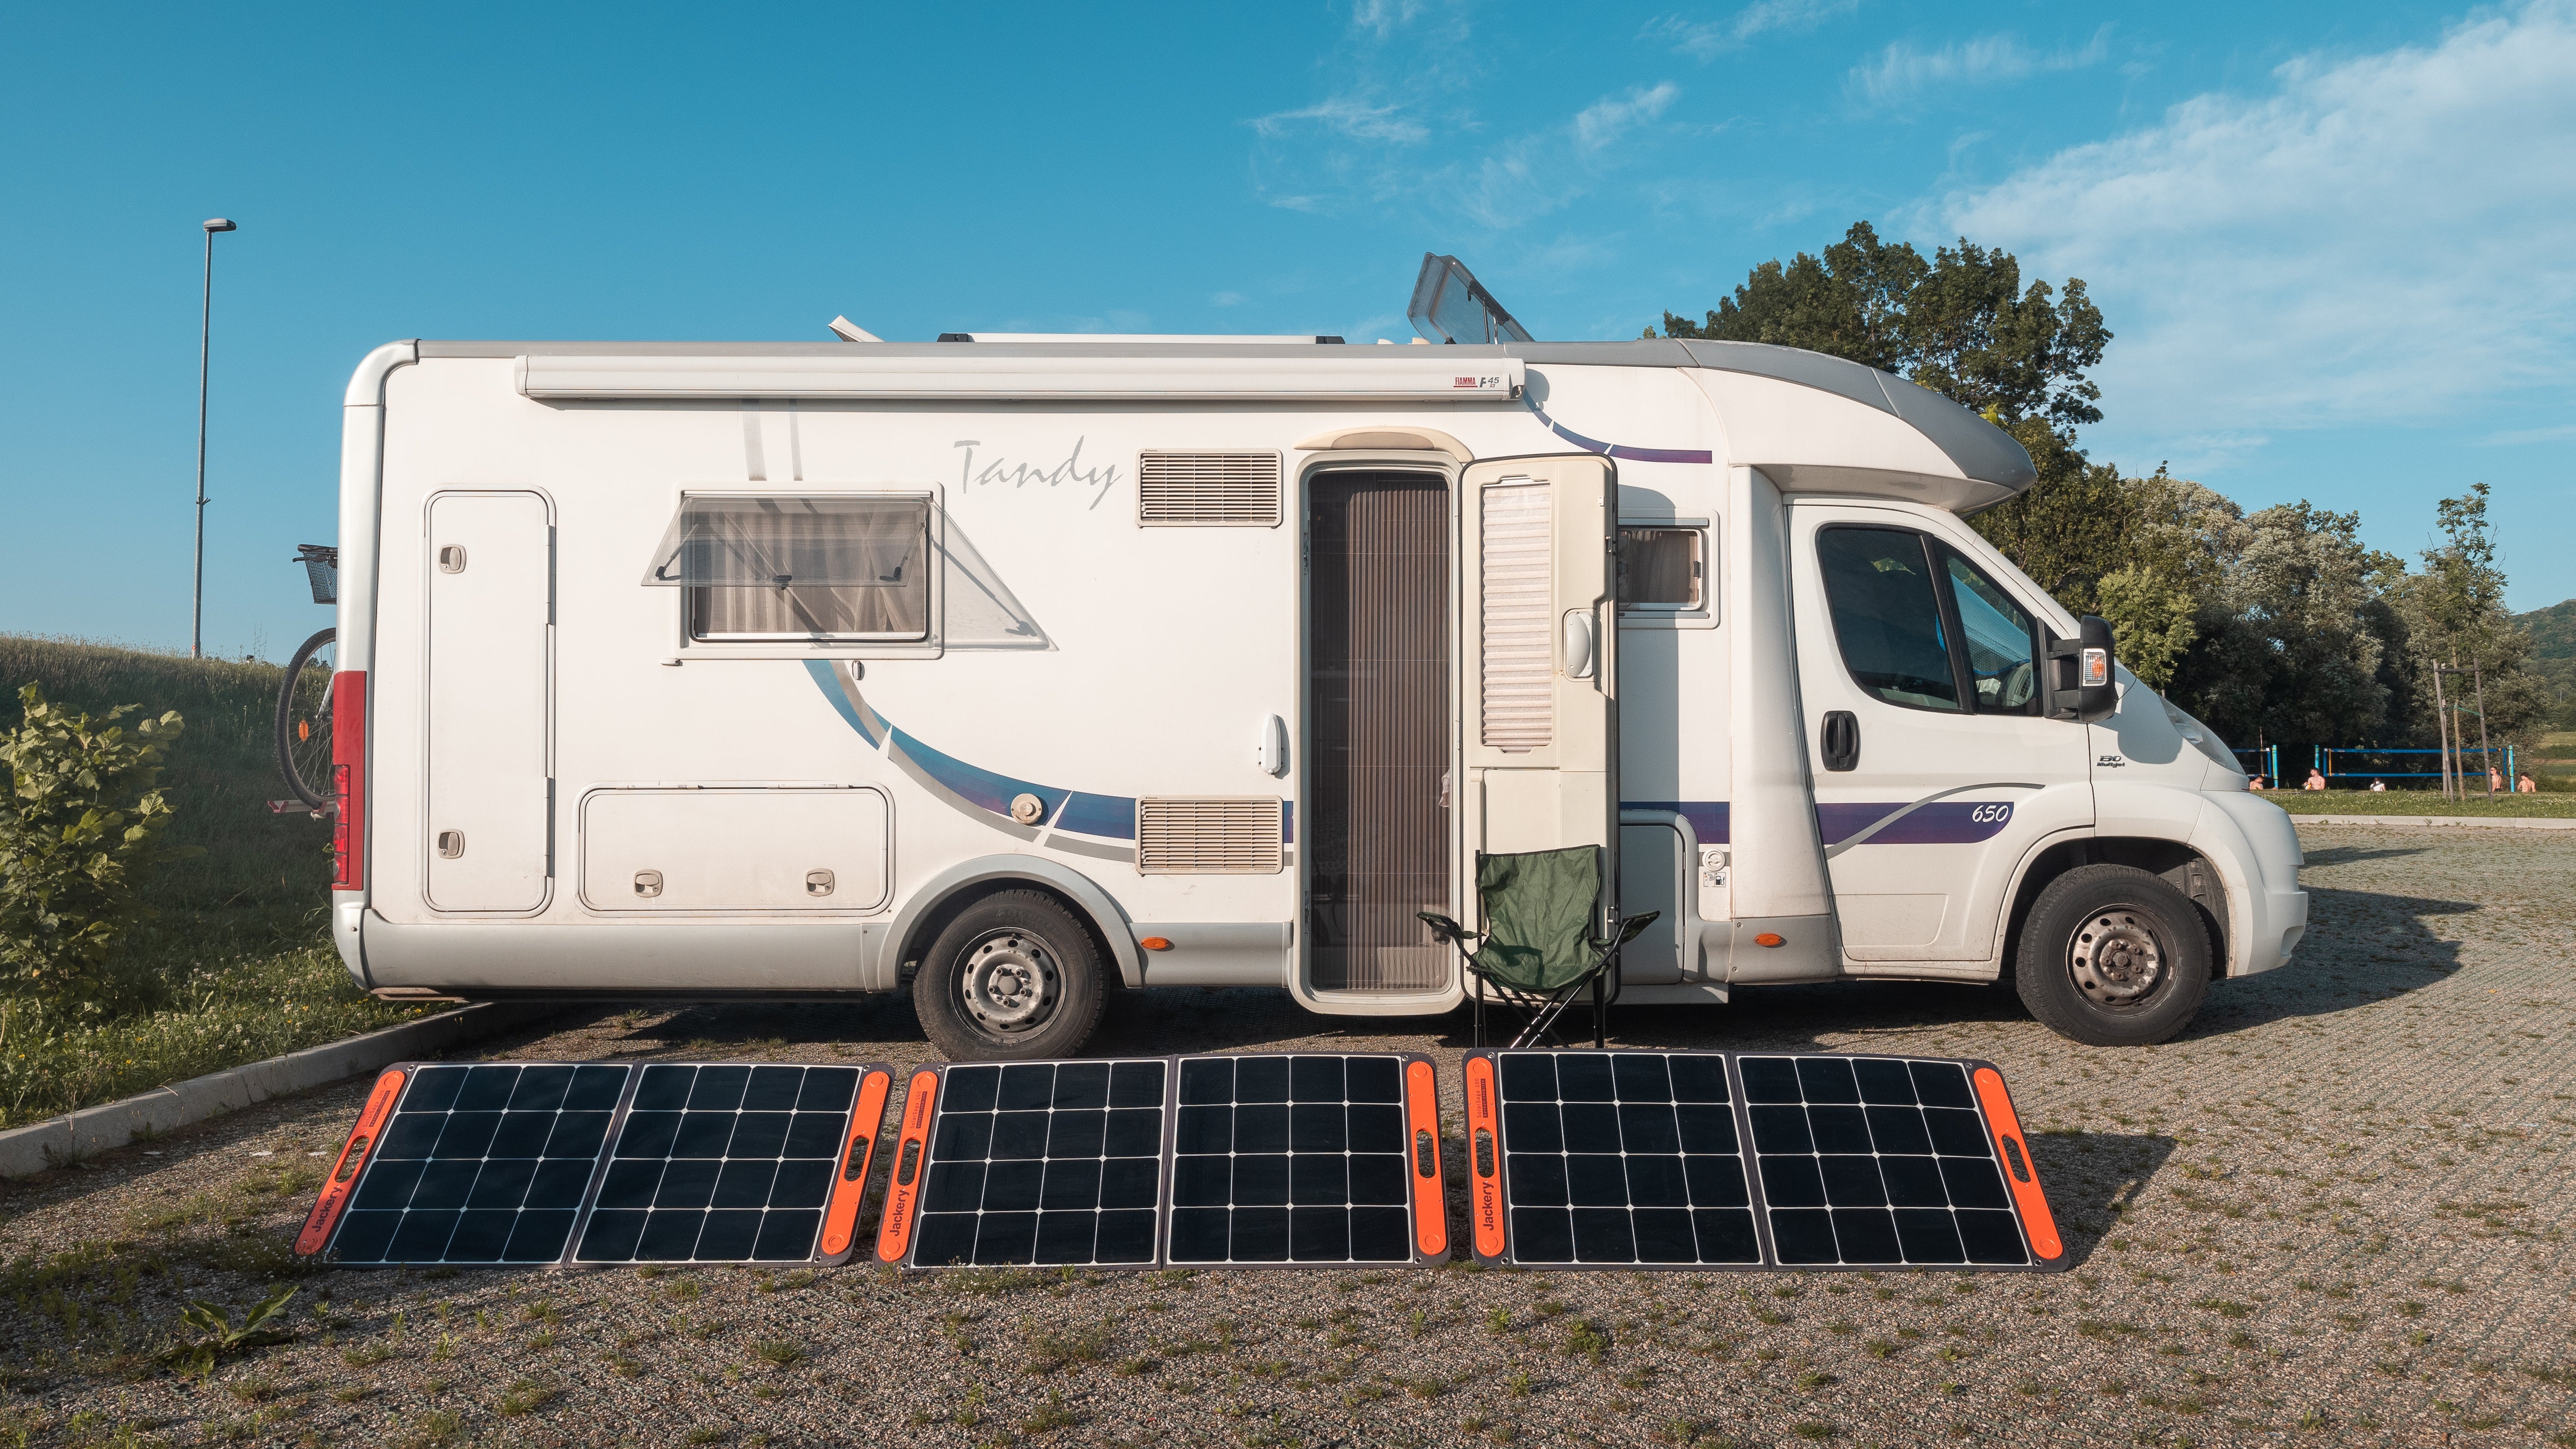 100Watt Wohnmobil-Anlagen: Solaranlagen fürs Wohnmobil